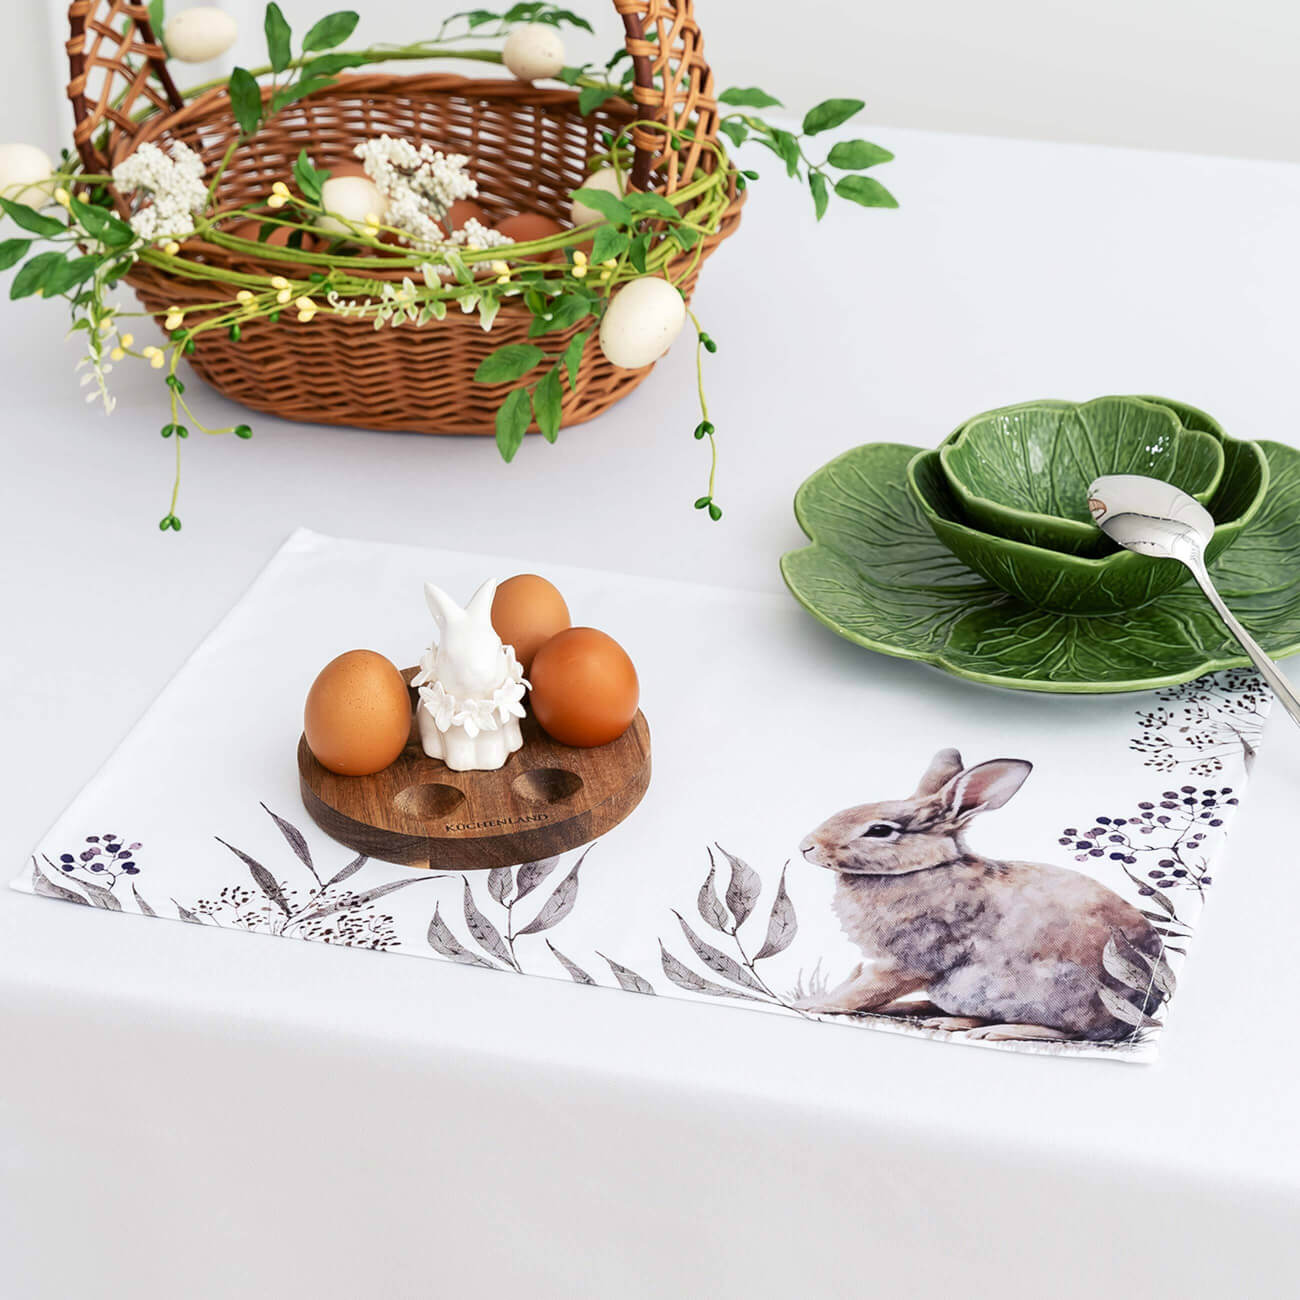 Салфетка под приборы, 30x45 см, полиэстер, белая, Кролик в листве, Natural Easter салфетка под приборы 30x45 см полиэстер прямоугольная белая кролик в ах pure easter